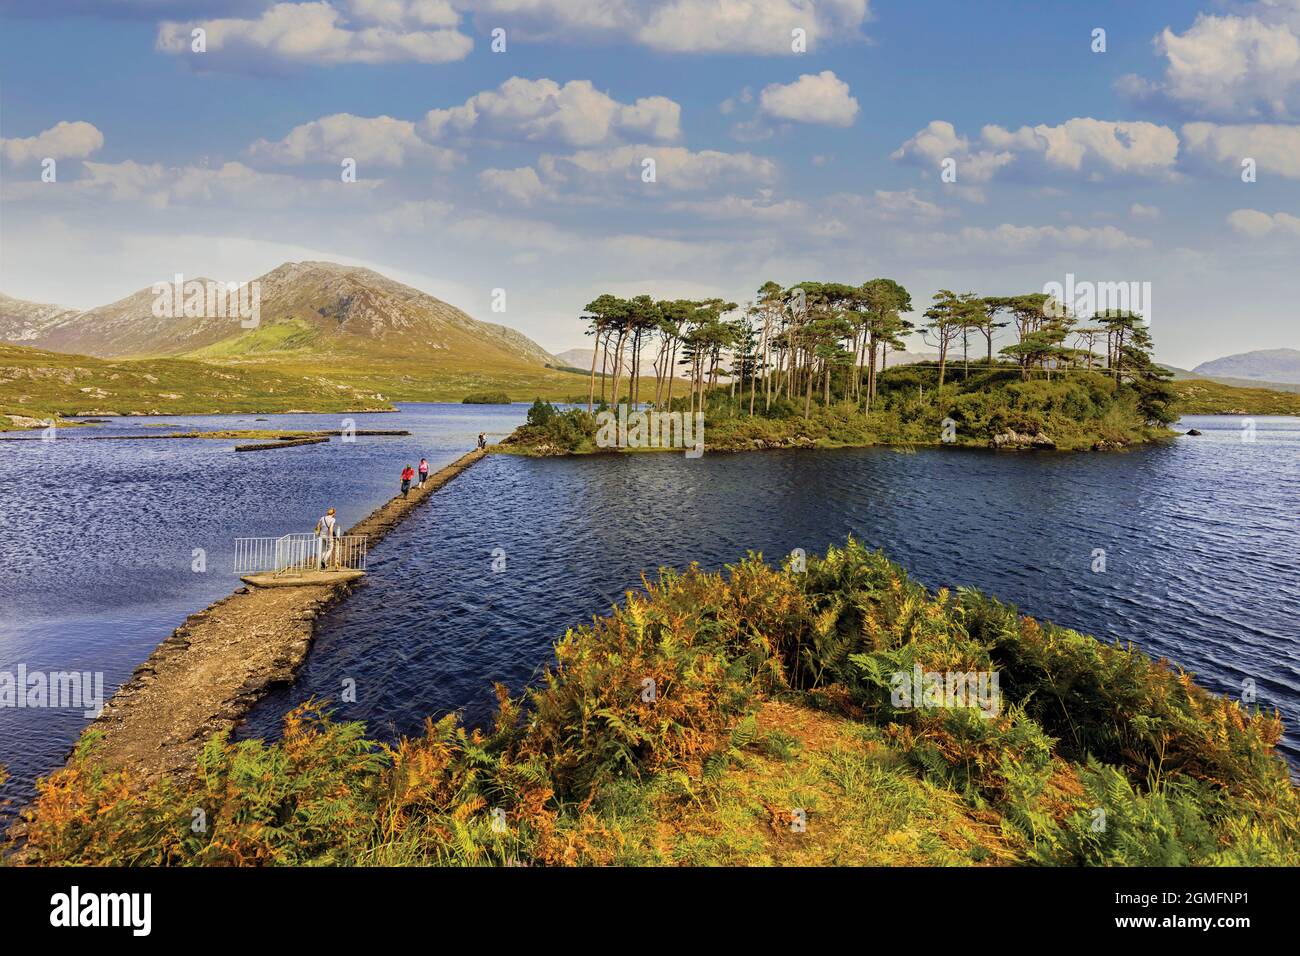 Visiteurs sur la chaussée de l'île Pines à Derryclare Lough, Connemara, comté de Galway, République d'Irlande. Eire. Banque D'Images